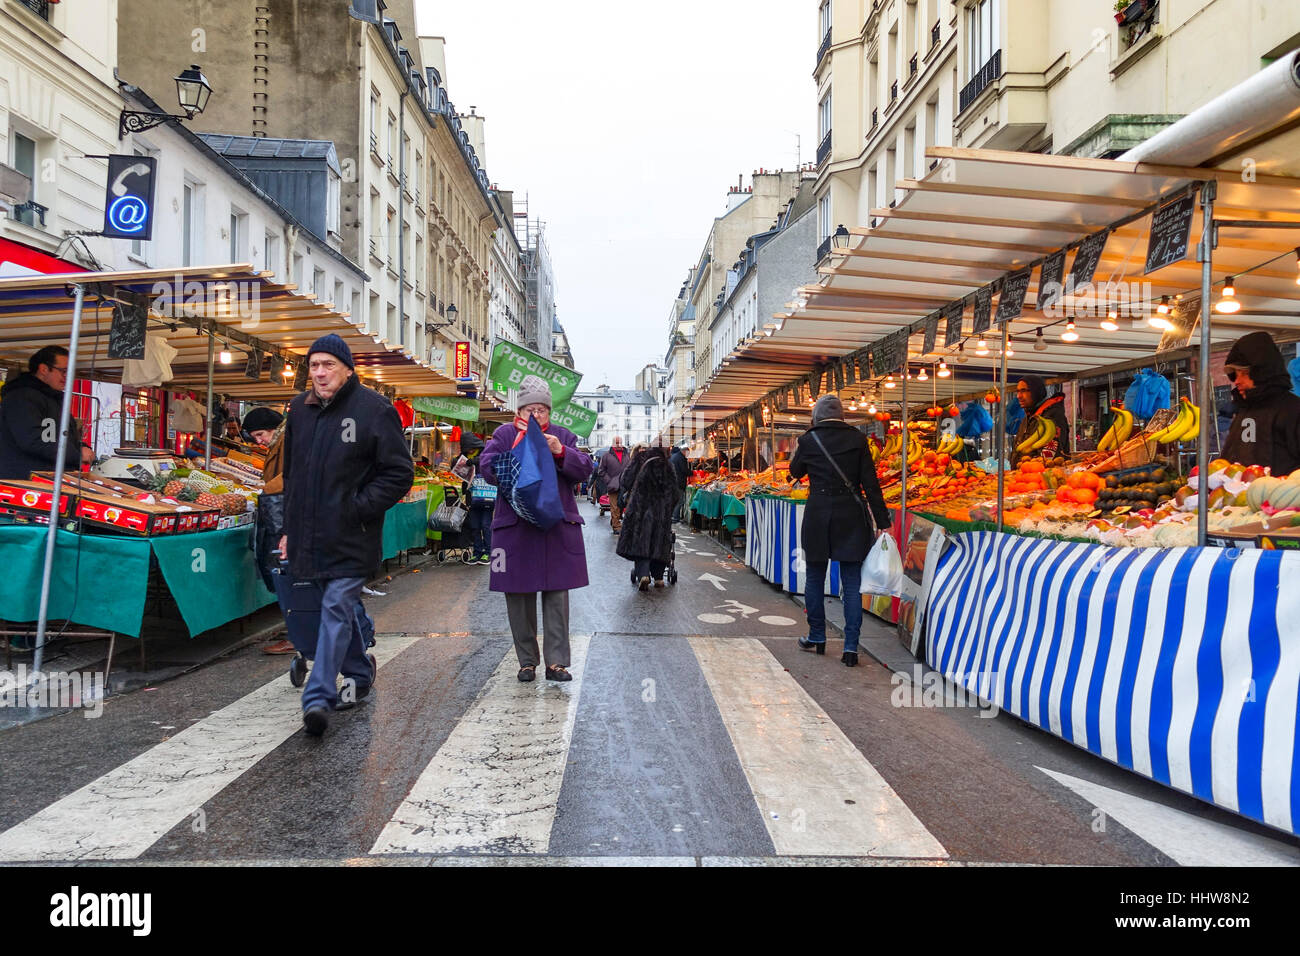 Aligre Markt im Freien essen, viel Obst und Gemüse Markt im Freien auf dem Platz des Aligre und Straße, die Rue Aligre. Paris, Frankreich. Stockfoto